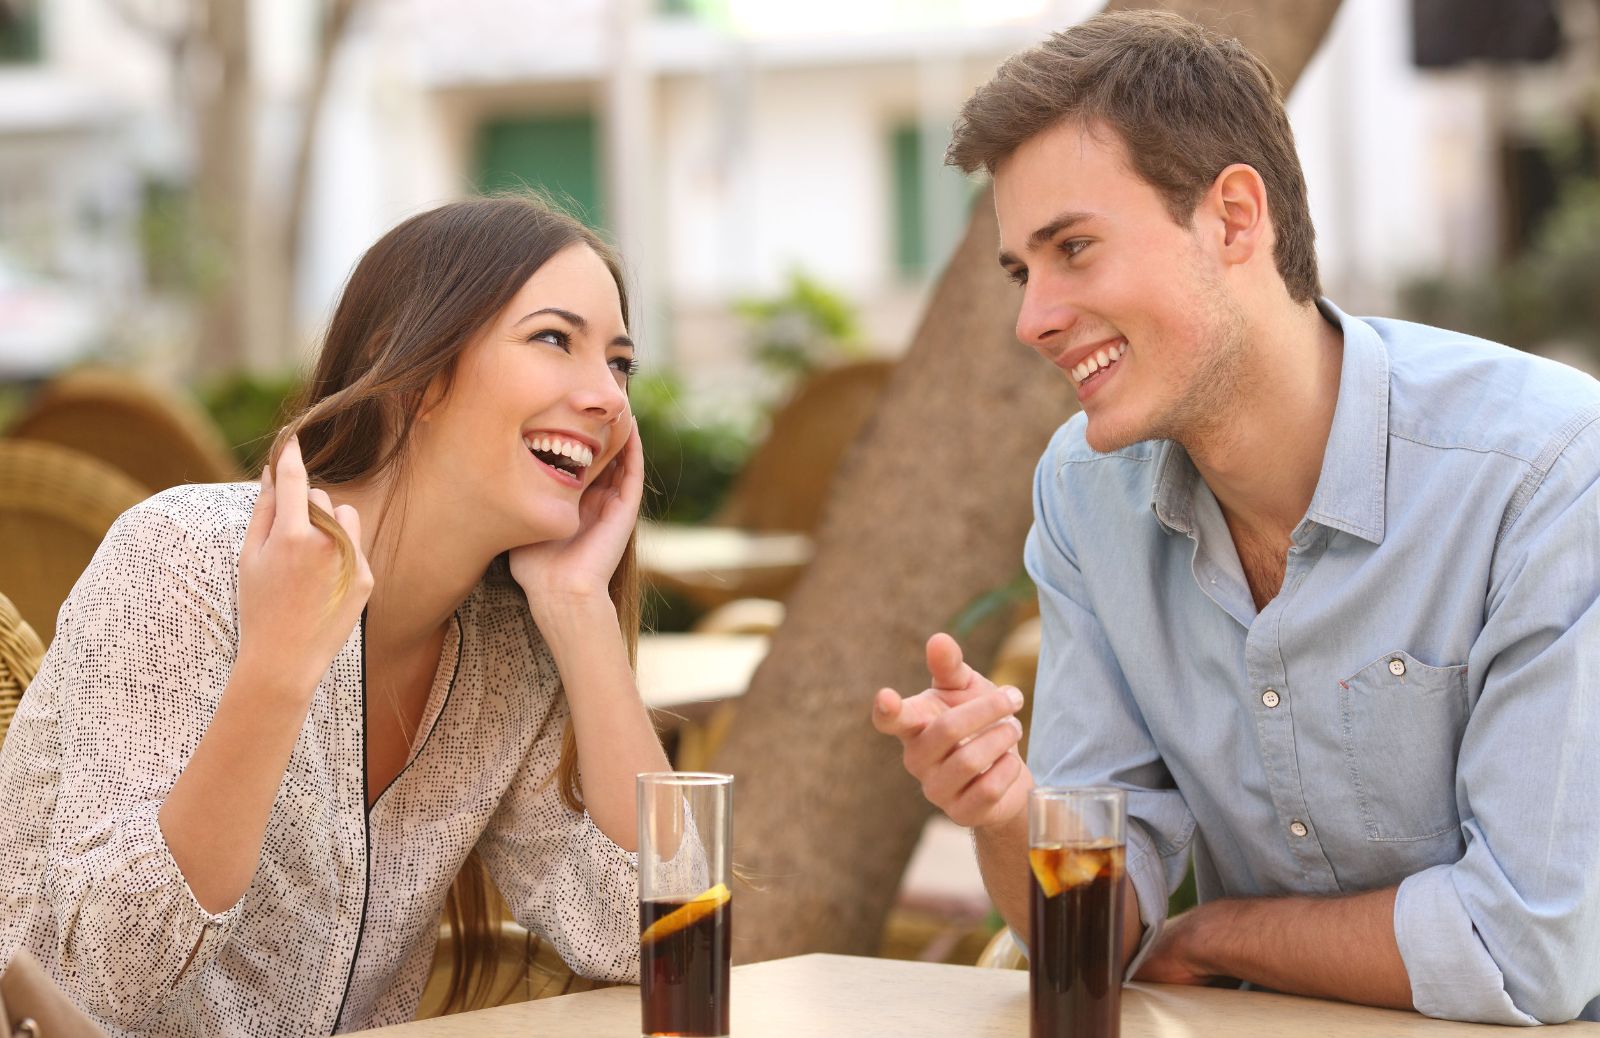 Psicologia del flirt: ci sta provando o è solo gentile?